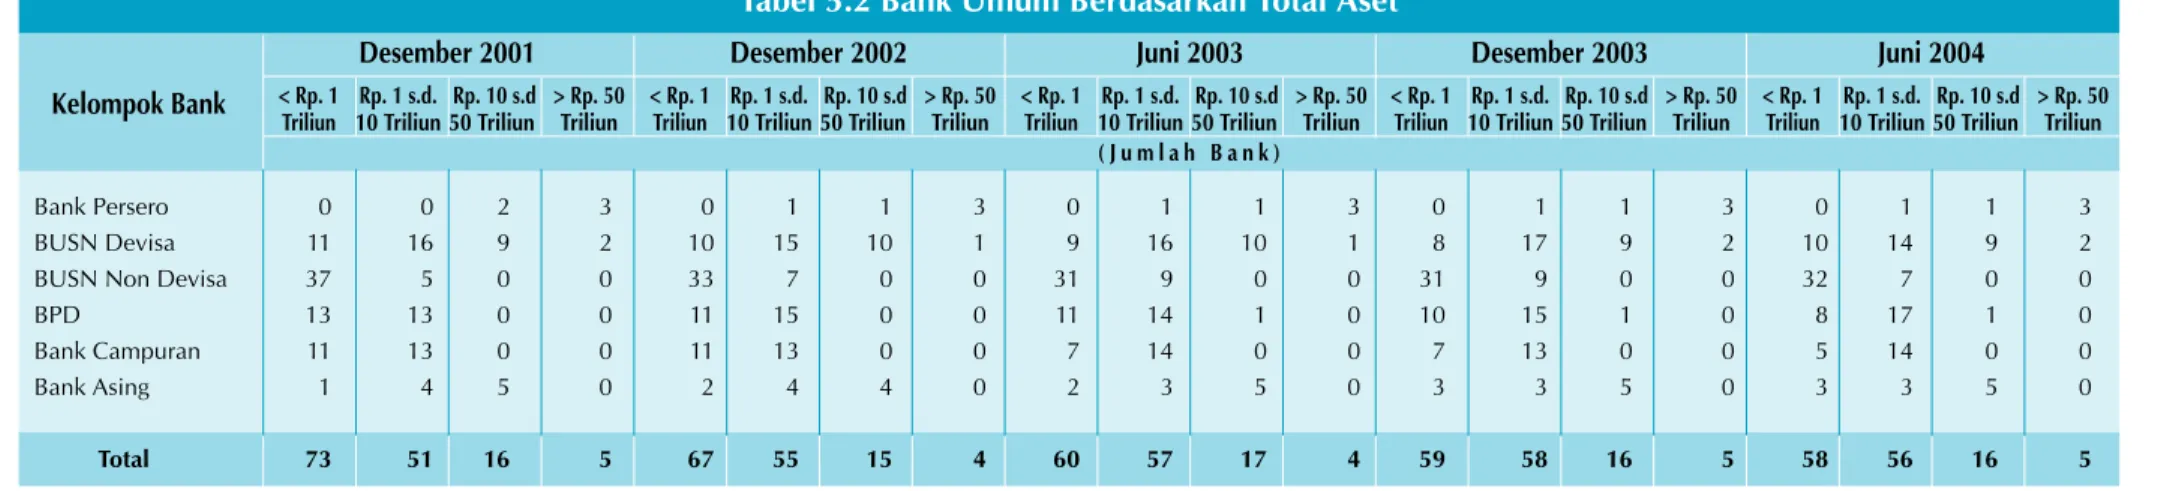 Tabel 5.2 Bank Umum Berdasarkan Total Aset